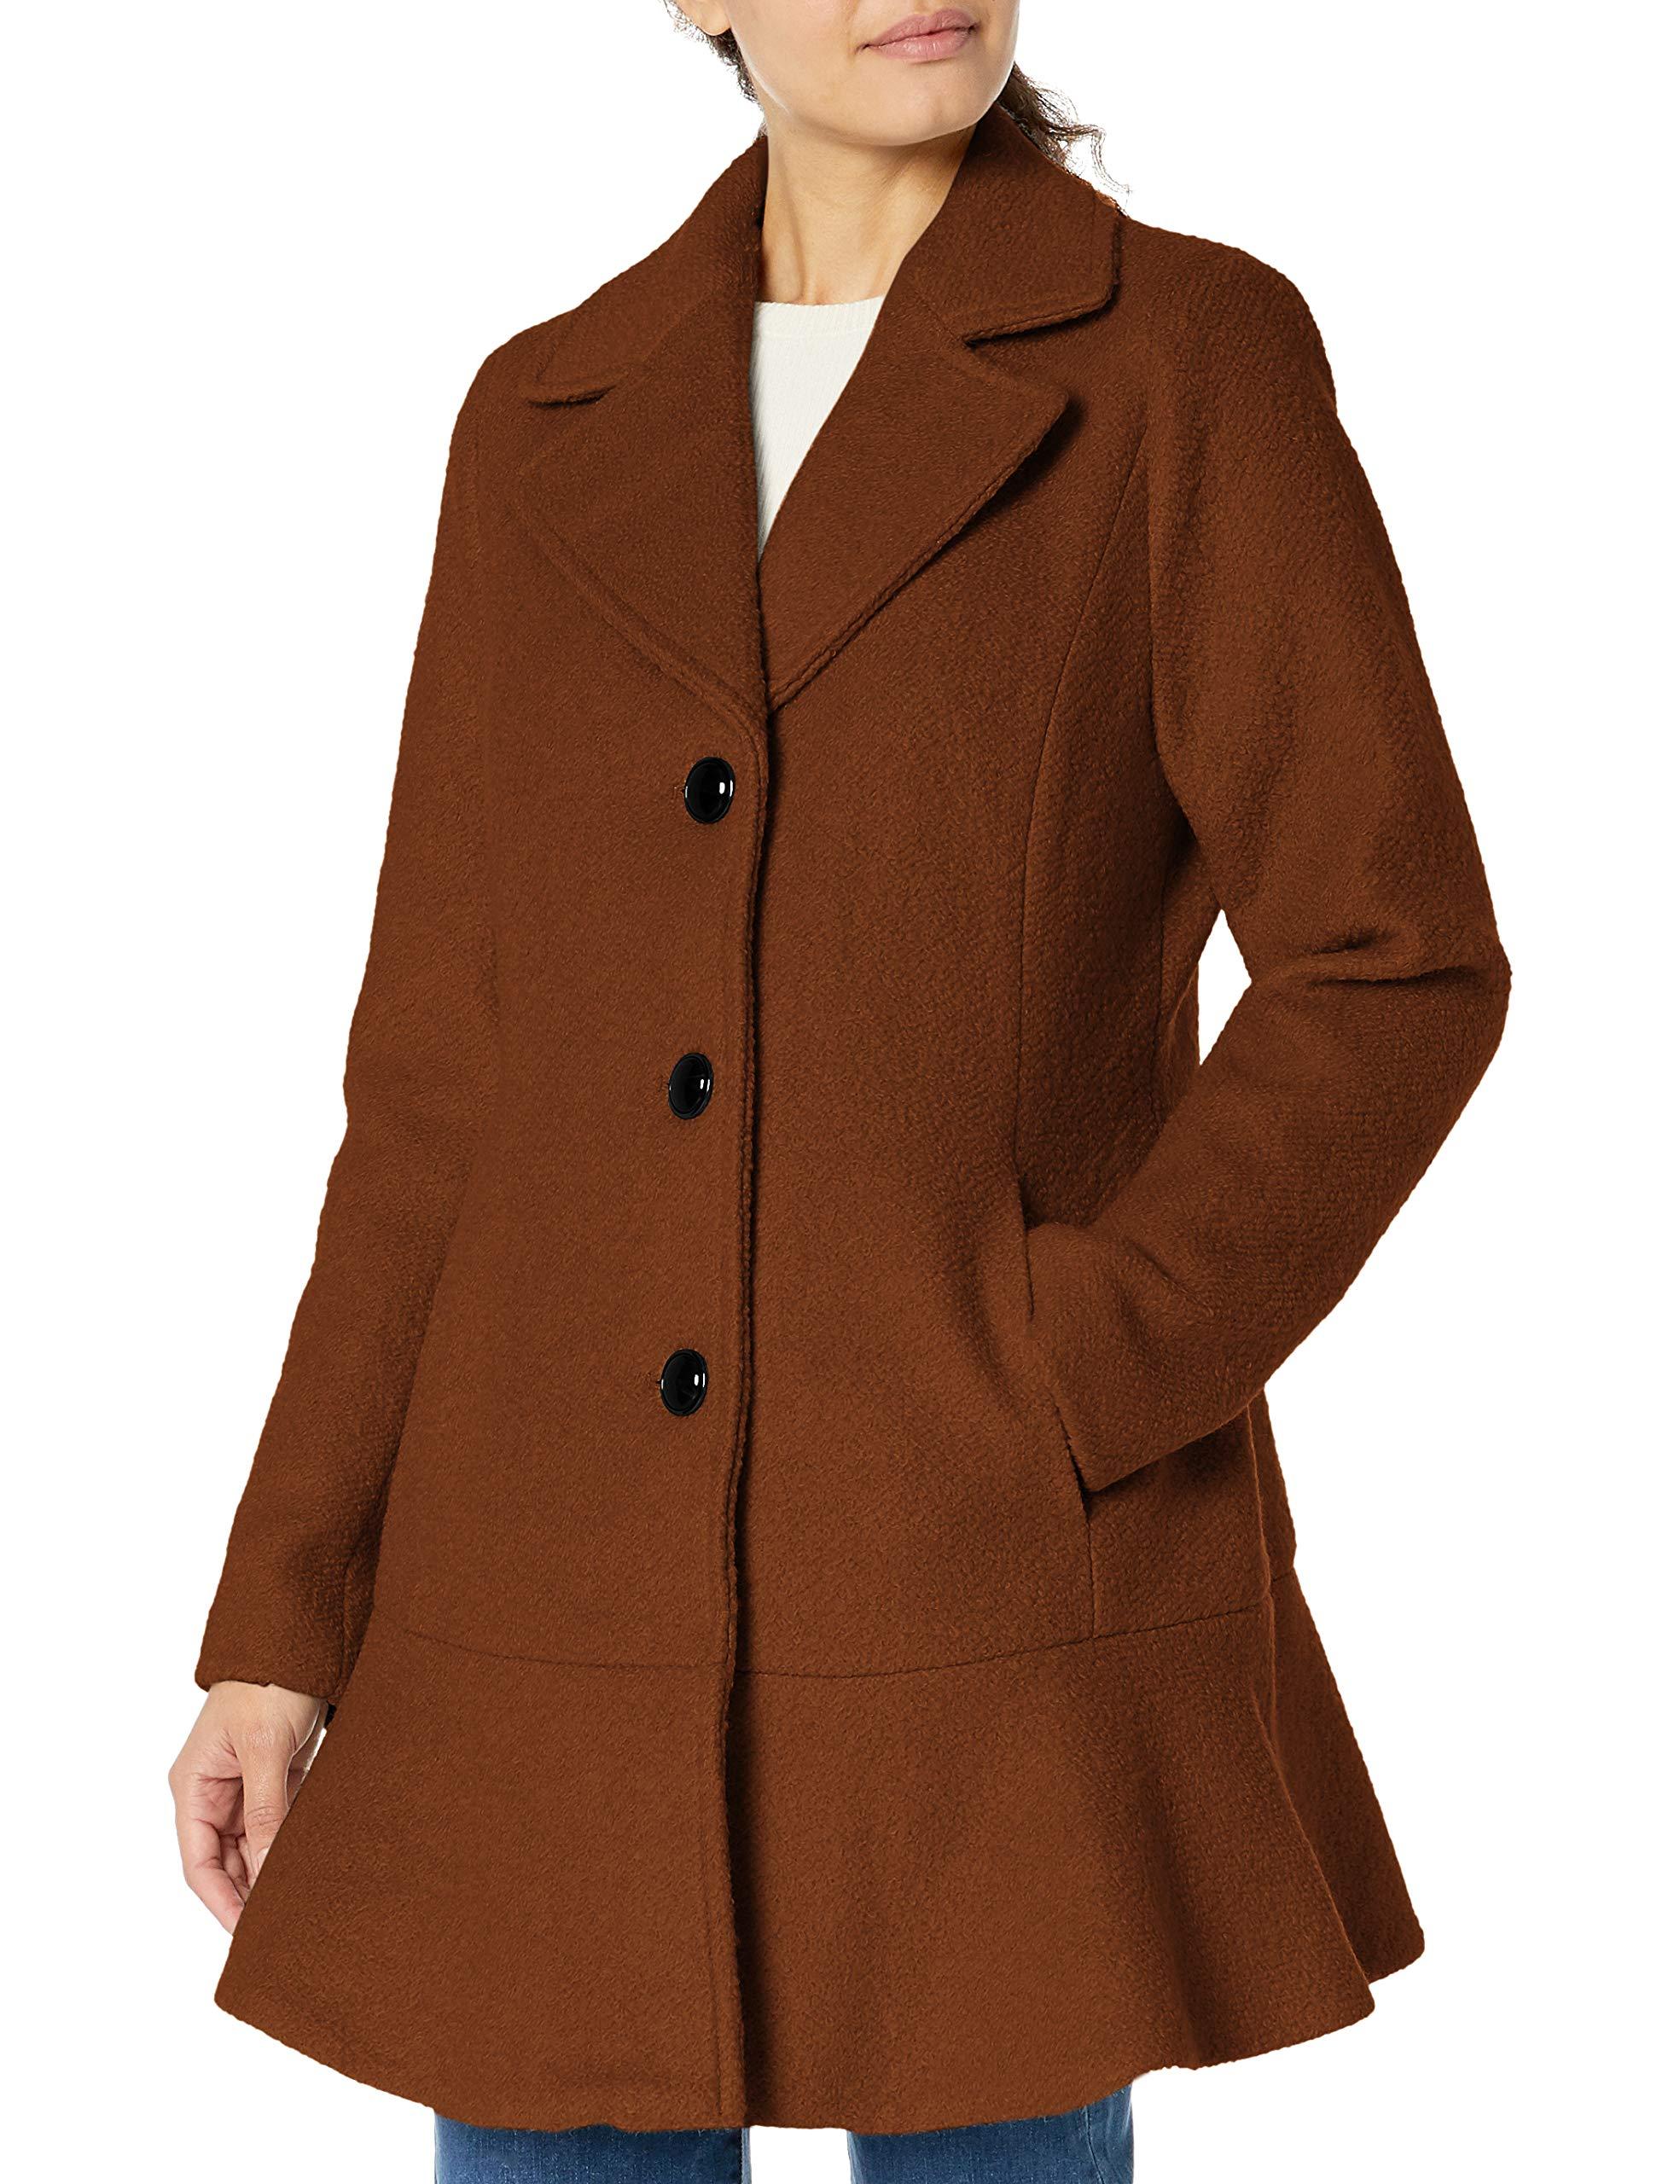 Kensie Casual Wool Coat in Rust (Brown) - Lyst